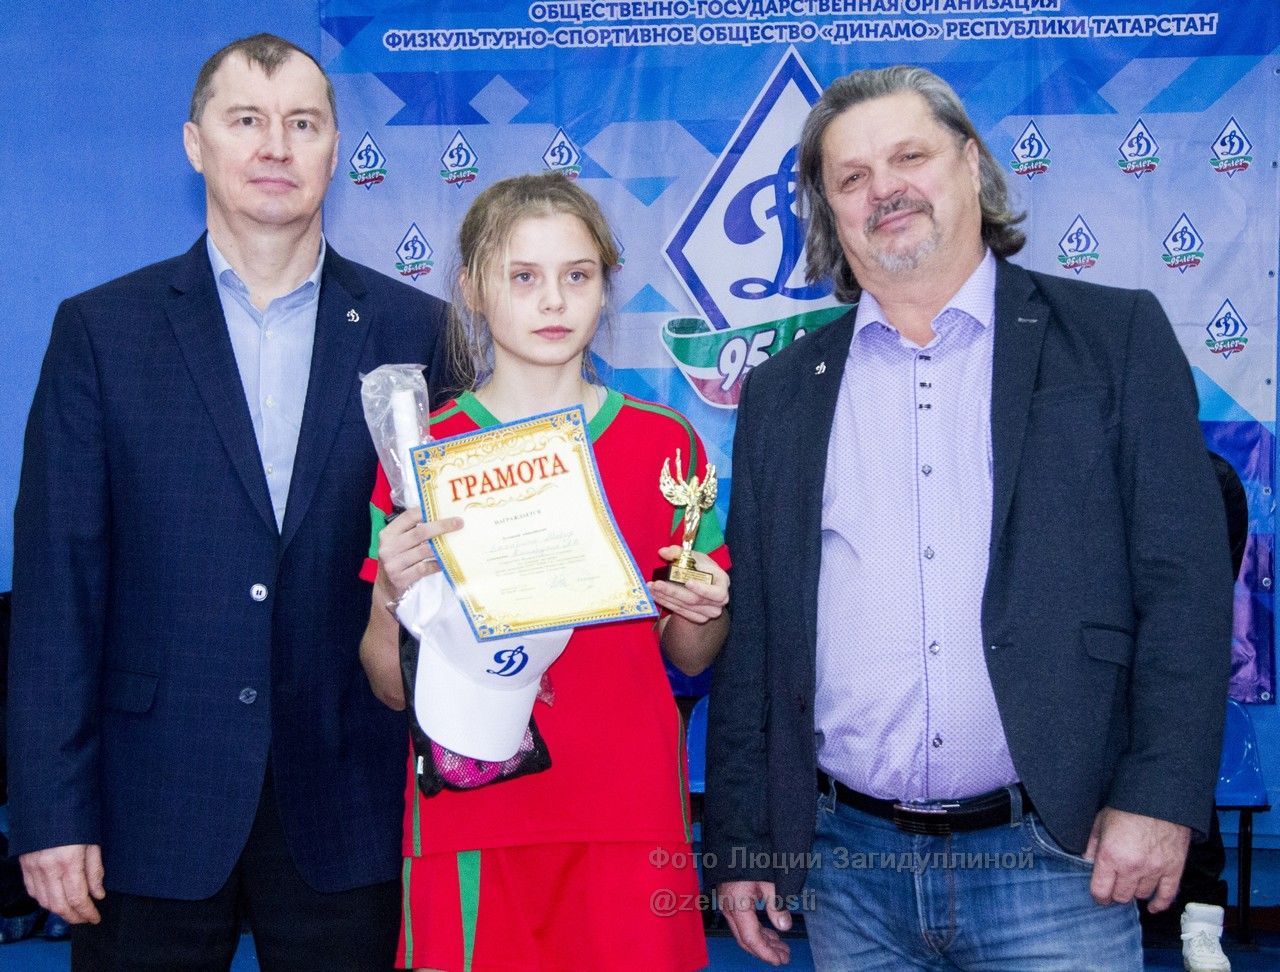 СК "Маяк": Всероссийский турнир по хоккею на траве среди девушек